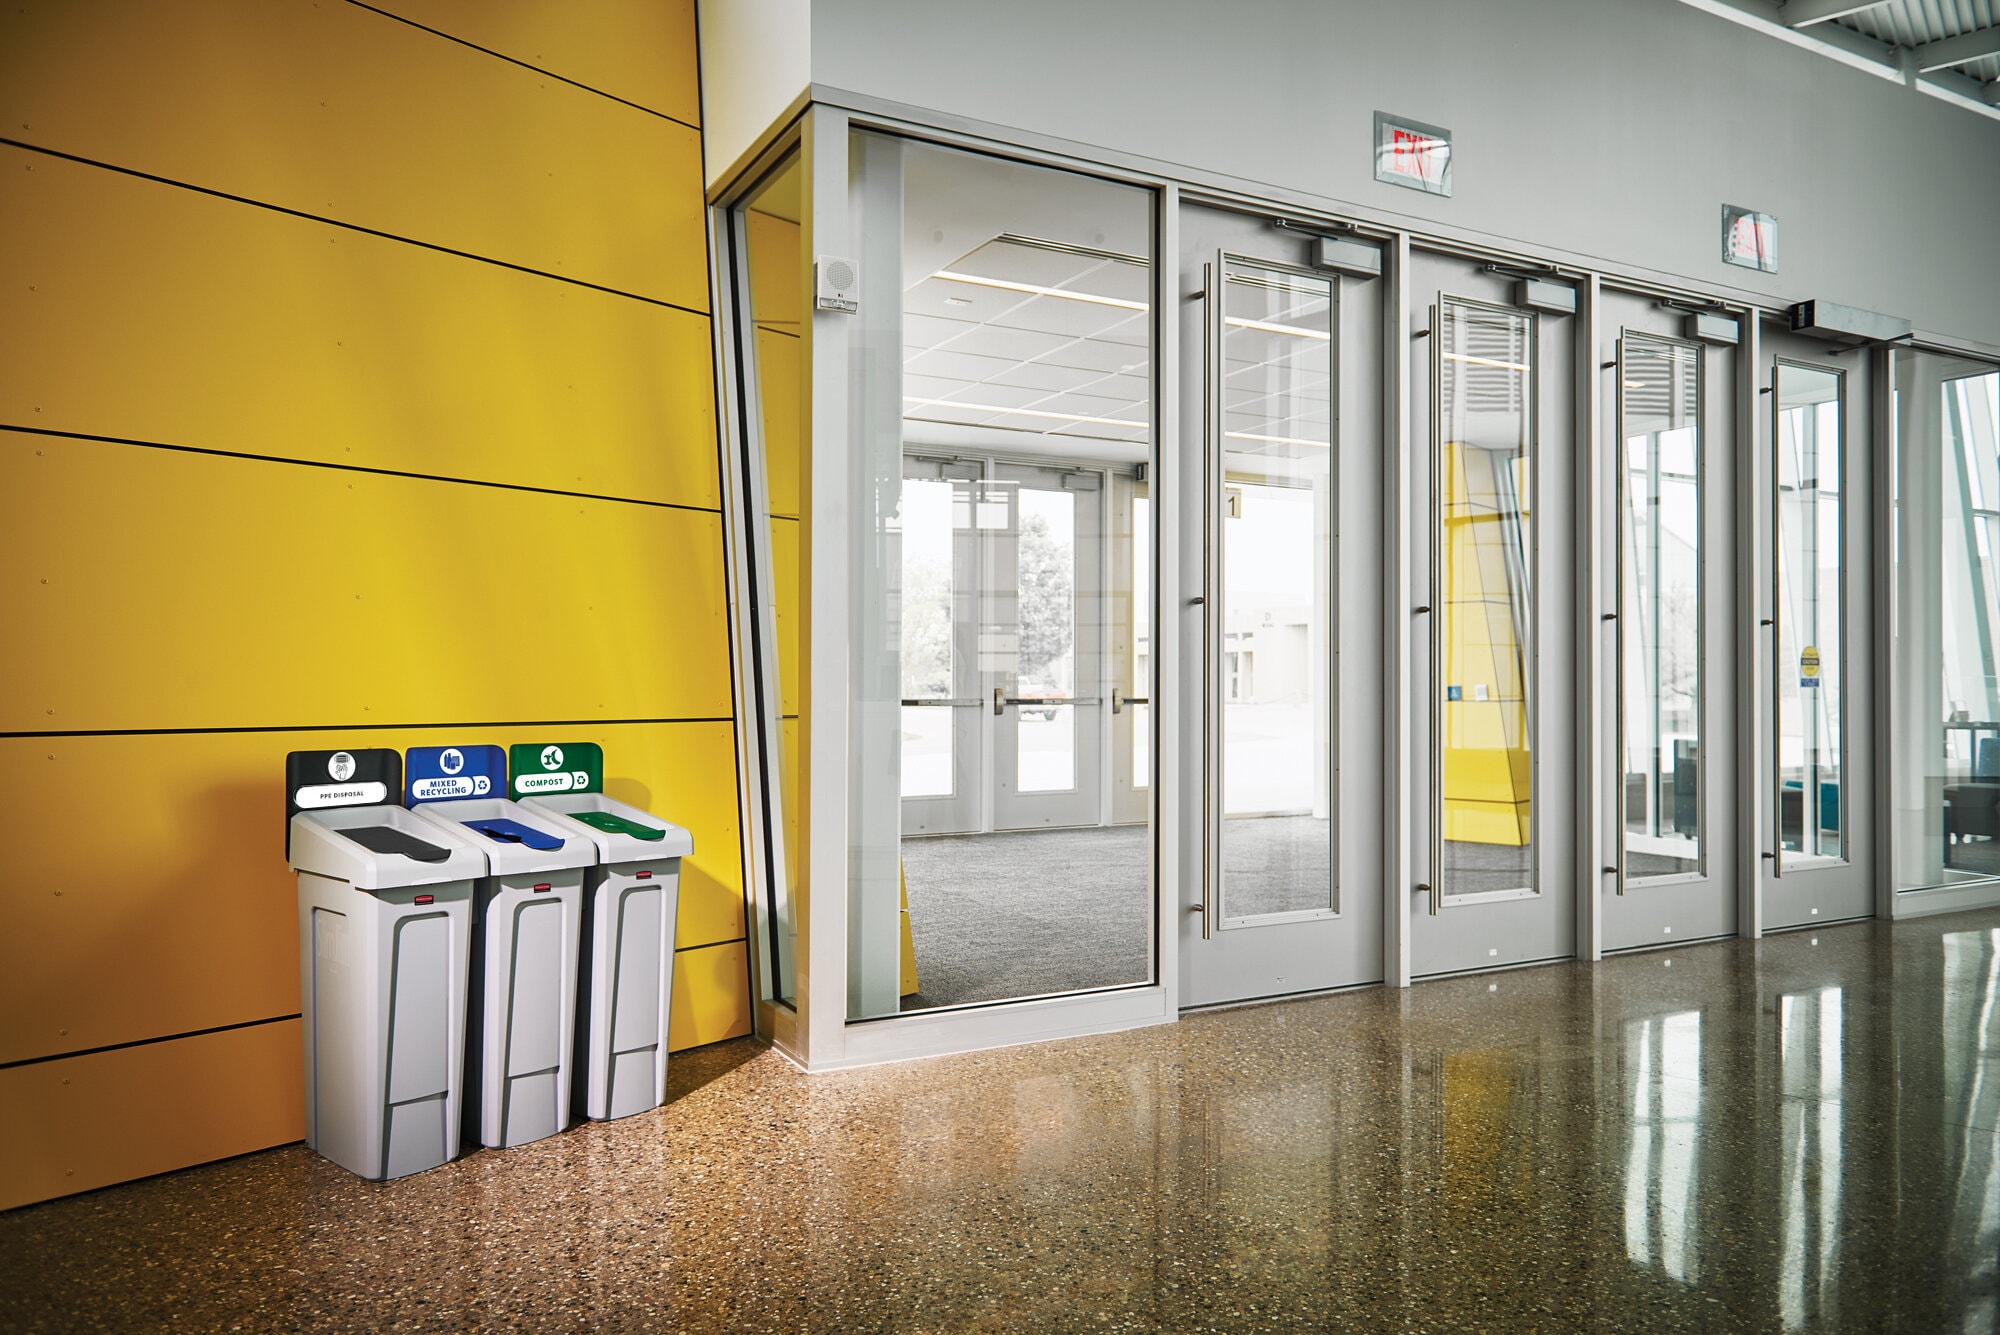 Dans un hall d'immeuble : trois bacs de tri à gauche de portes automatiques.